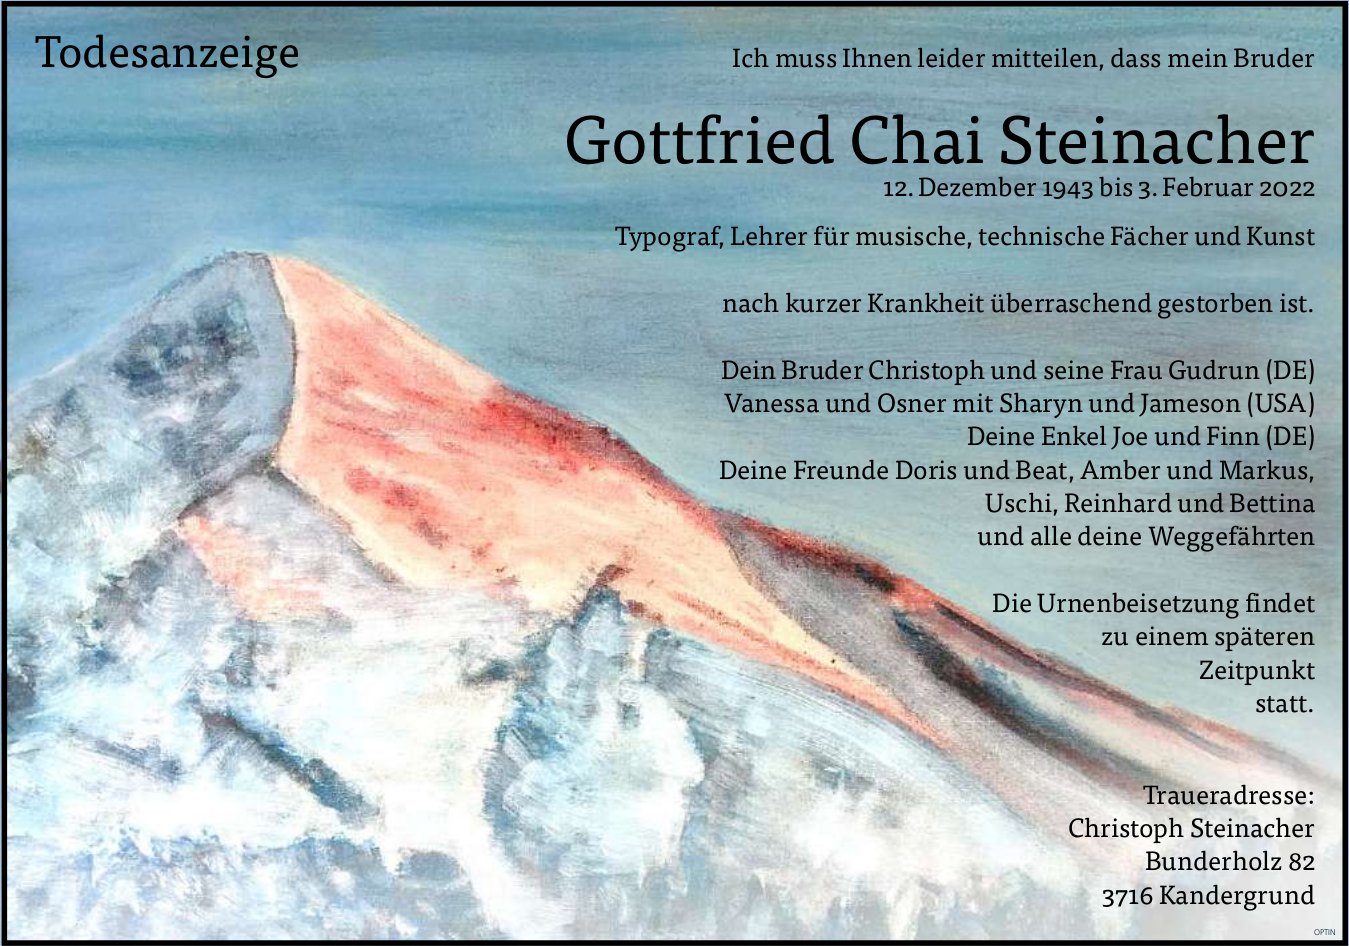 Gottfried Chai Steinacher, Februar 2022 / TA